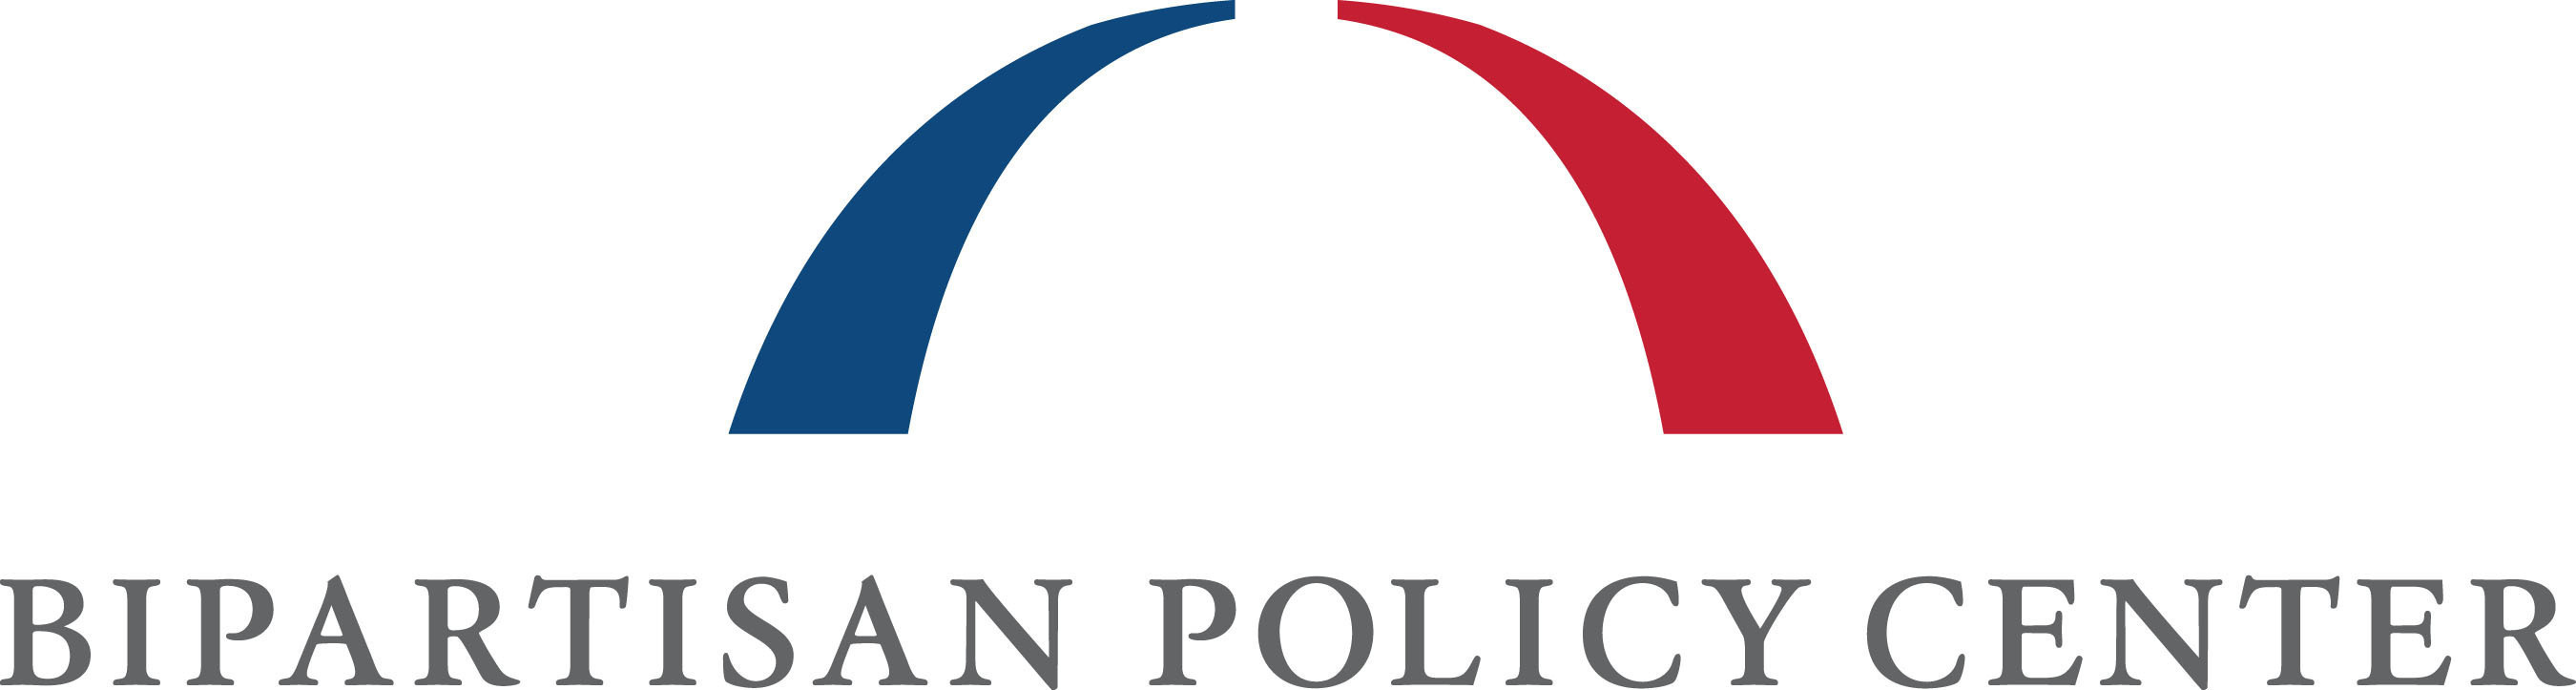 Bipartisan Policy Center Logo